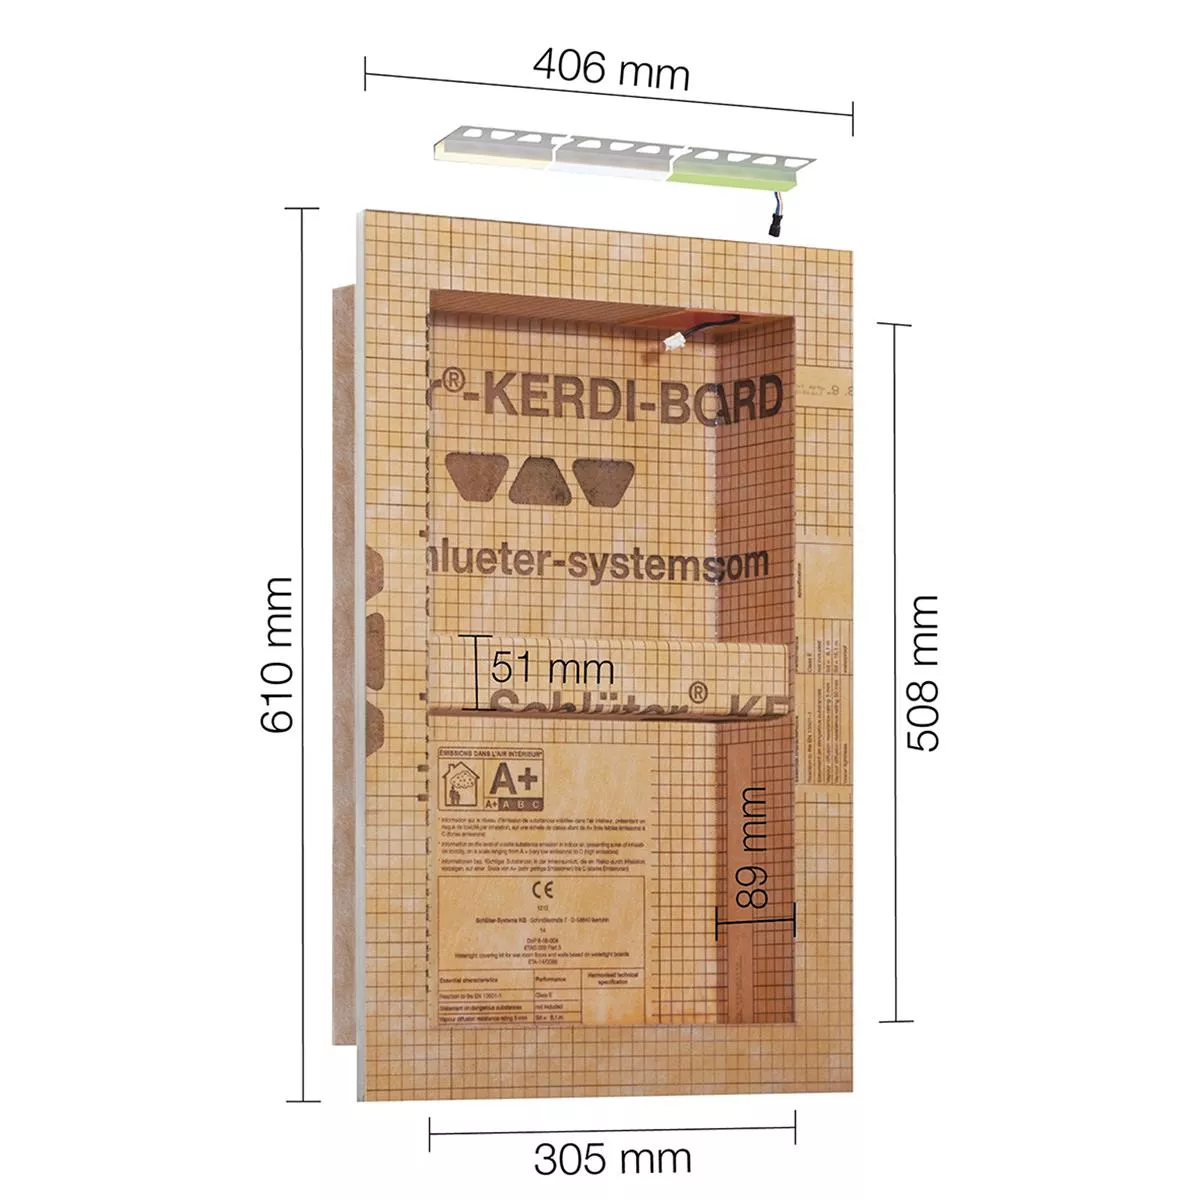 Schlüter Kerdi Board NLT Nischen Set LED-Beleuchtung RGB 30,5x50,8x0,89 cm